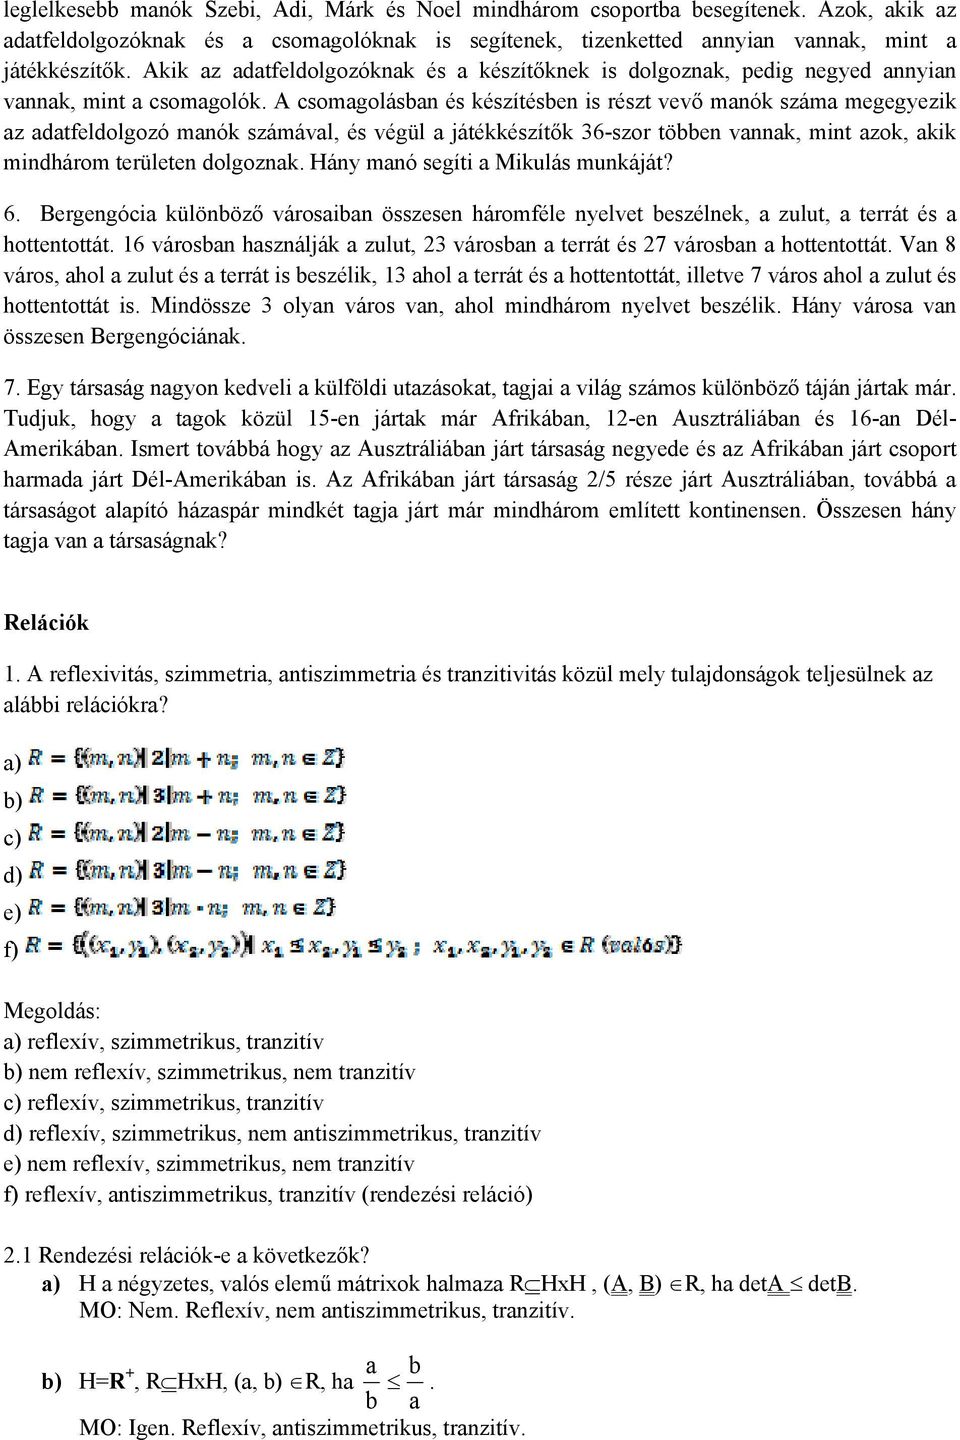 Halmazelmélet. 1. Jelenítsük meg Venn-diagrammon az alábbi halmazokat: a)  b) c) 2. Milyen halmazokat határoznak meg az alábbi Venn-diagrammok? - PDF  Free Download